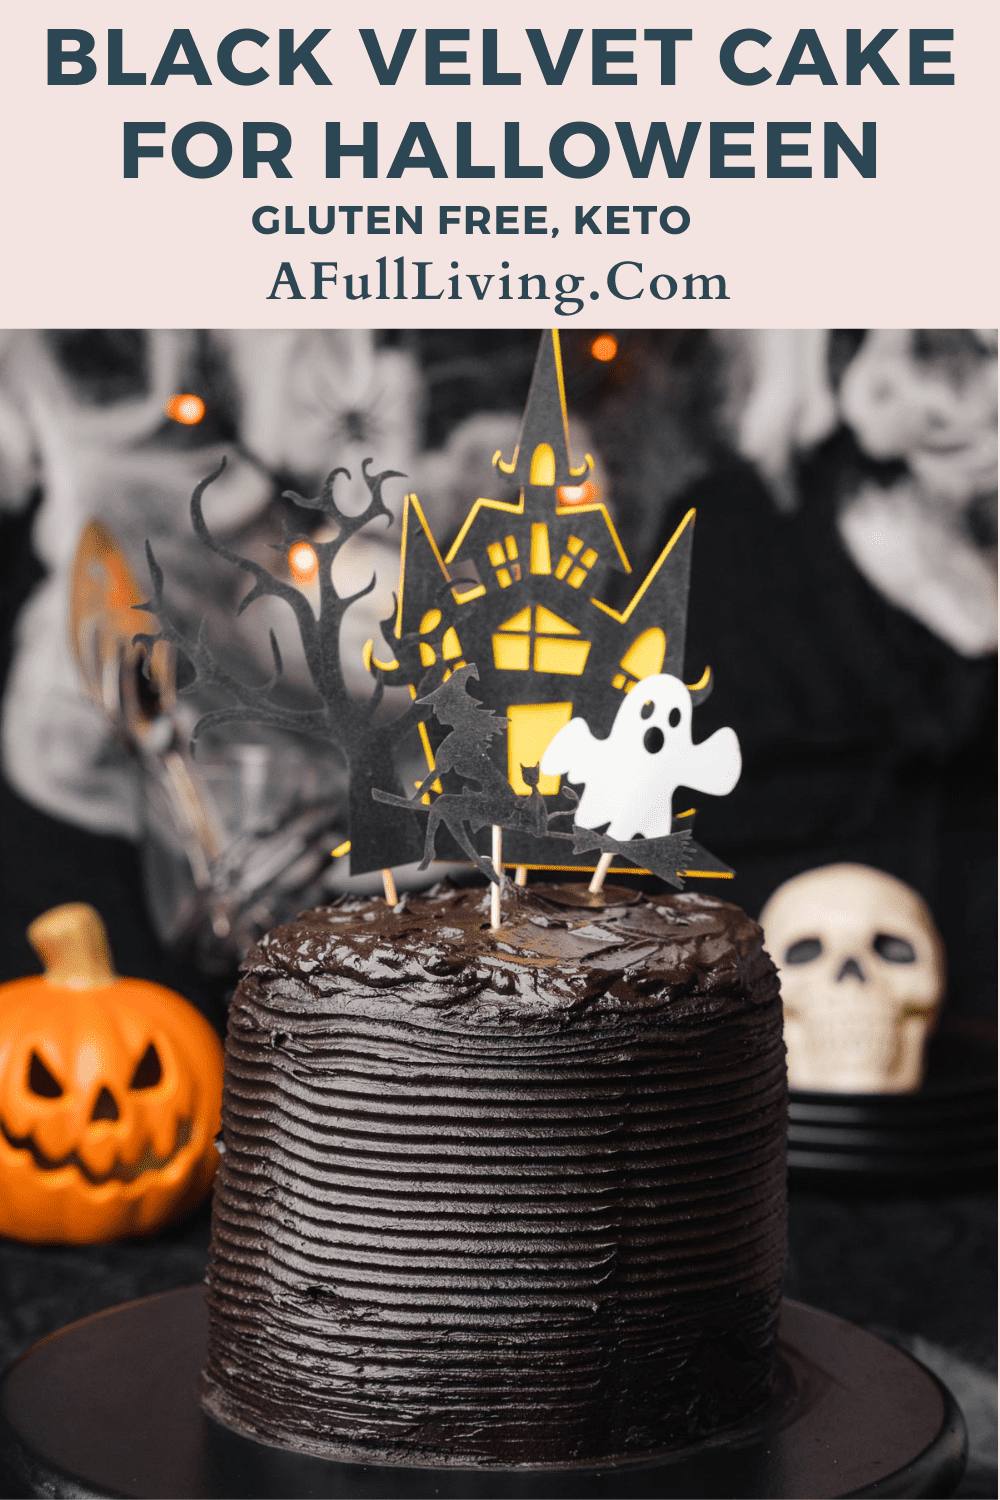 Black Velvet Cake for Halloween